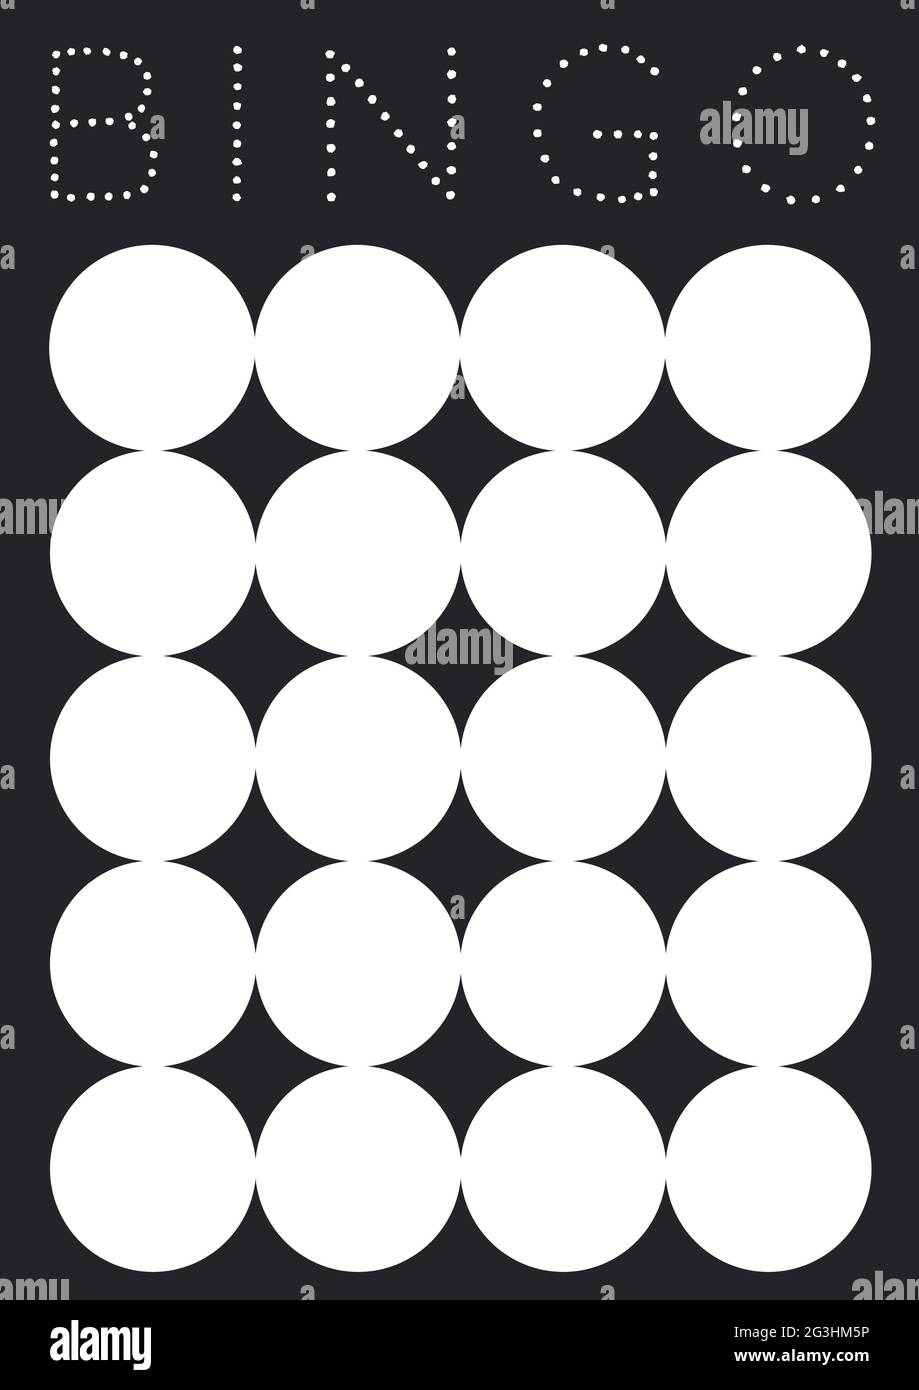 Komposition von Bingo-Text mit Score-Chart auf schwarzem Hintergrund Stockfoto